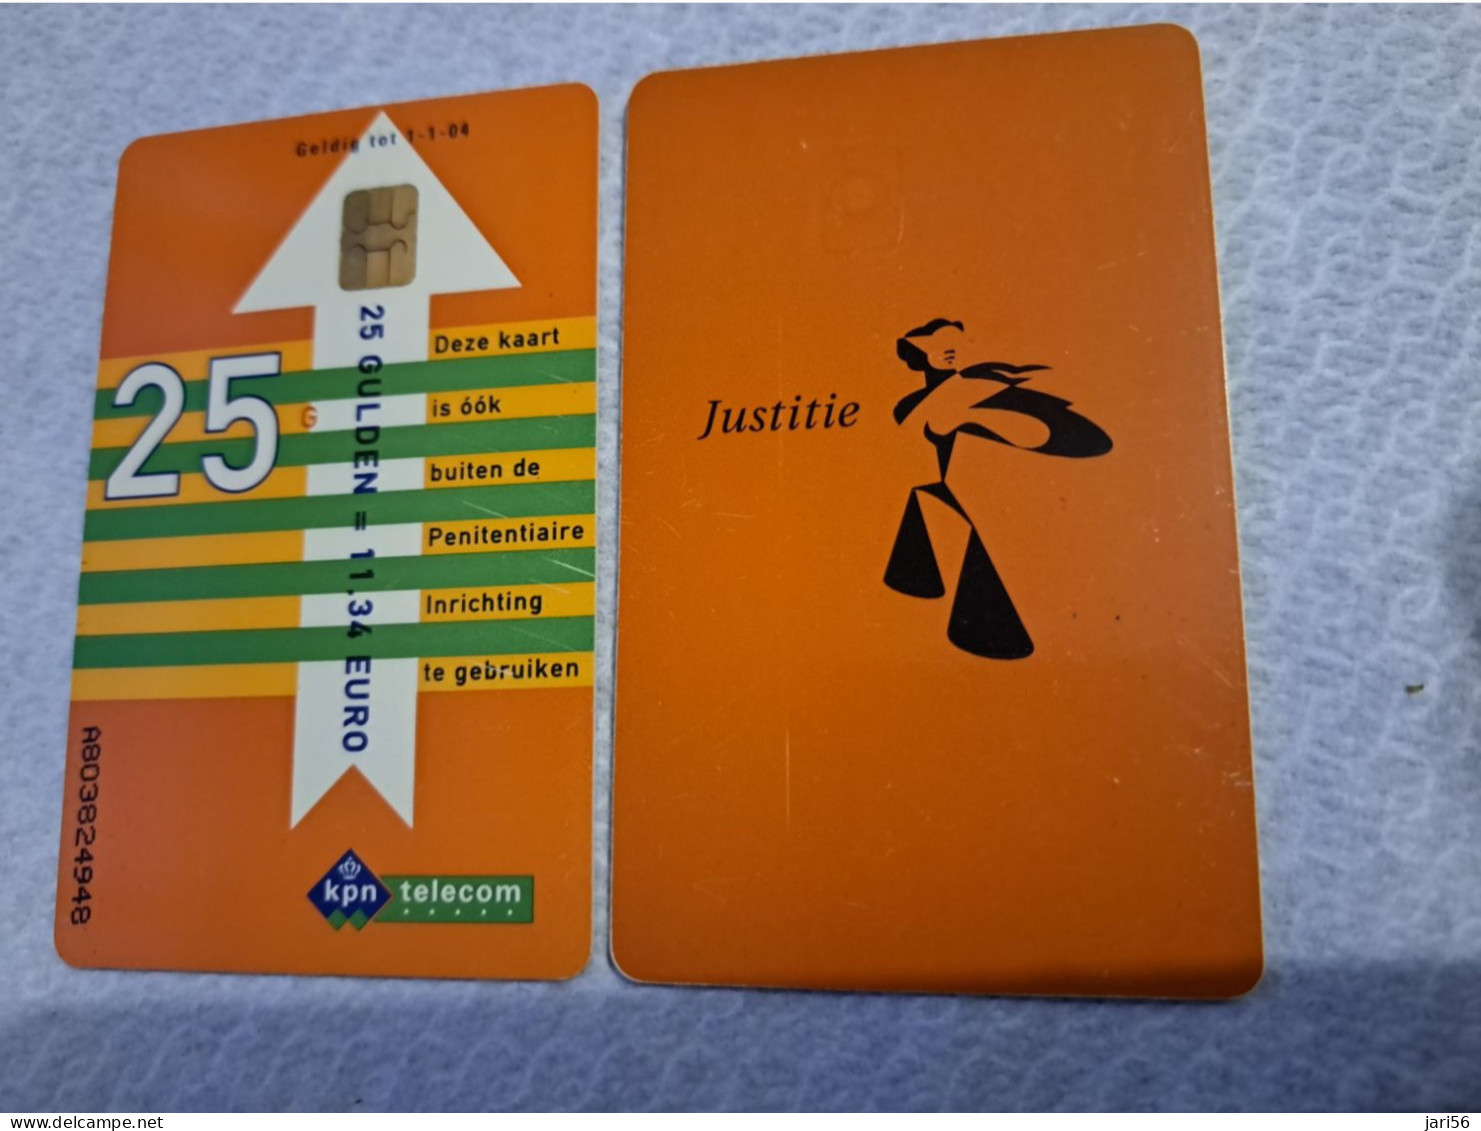 NETHERLANDS   HFL 25,-  / USED  / DATE  1-1-04  JUSTITIE/PRISON CARD  CHIP CARD/ USED   ** 16158** - GSM-Kaarten, Bijvulling & Vooraf Betaalde